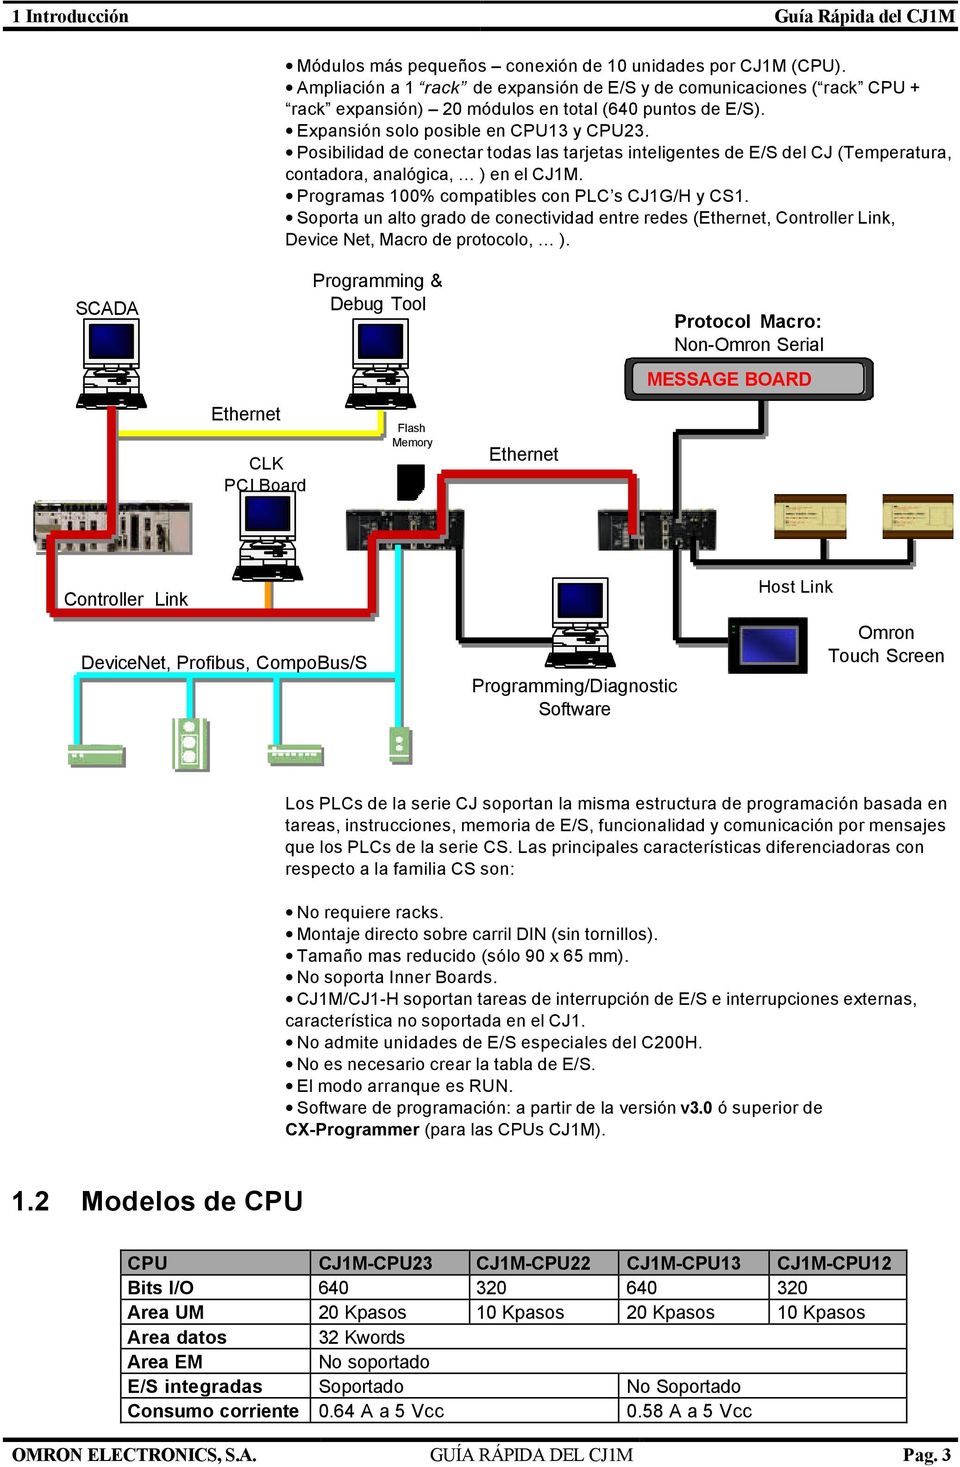 Posibilidad de conectar todas las tarjetas inteligentes de E/S del CJ (Temperatura, contadora, analógica, ) en el CJ1M. Programas 100% compatibles con PLC s CJ1G/H y CS1.